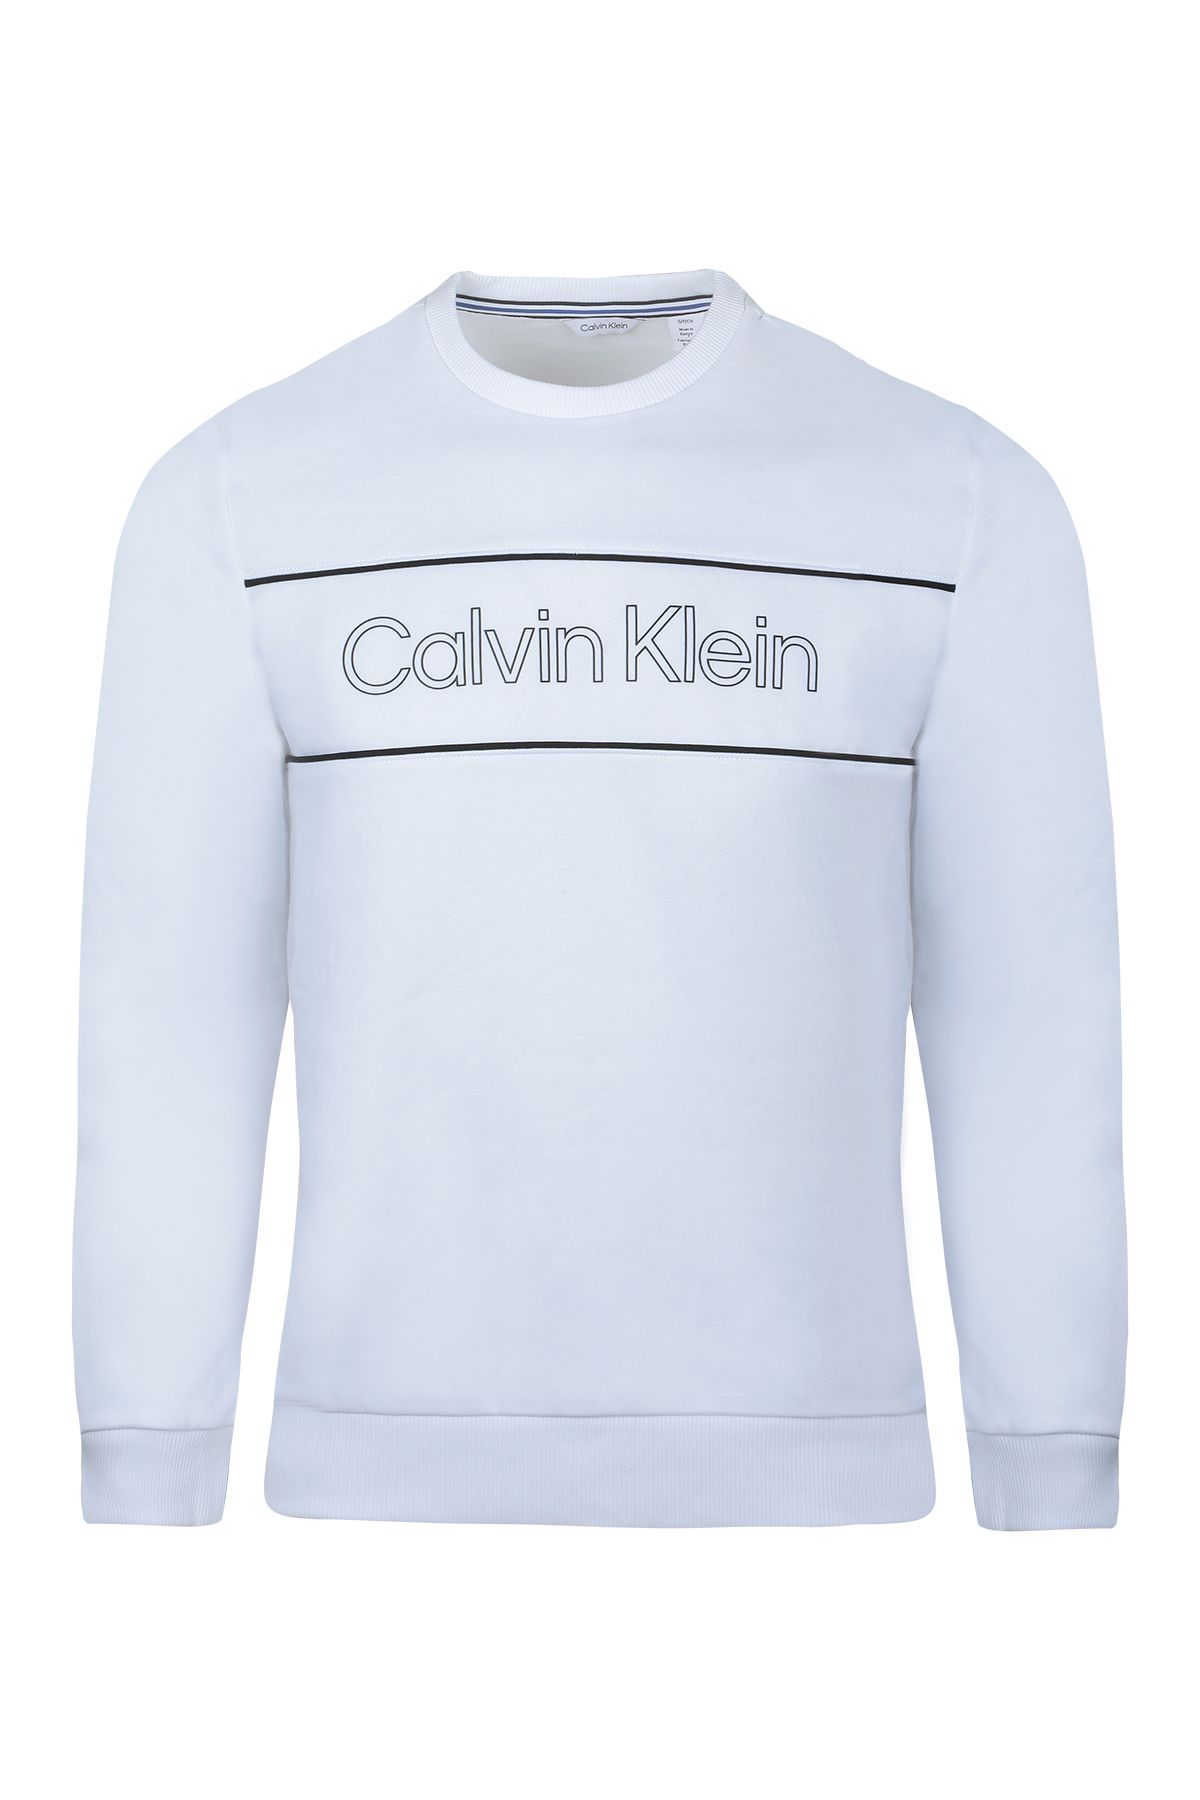 Calvin Klein Erkek Sweatshırt 40j6242-122